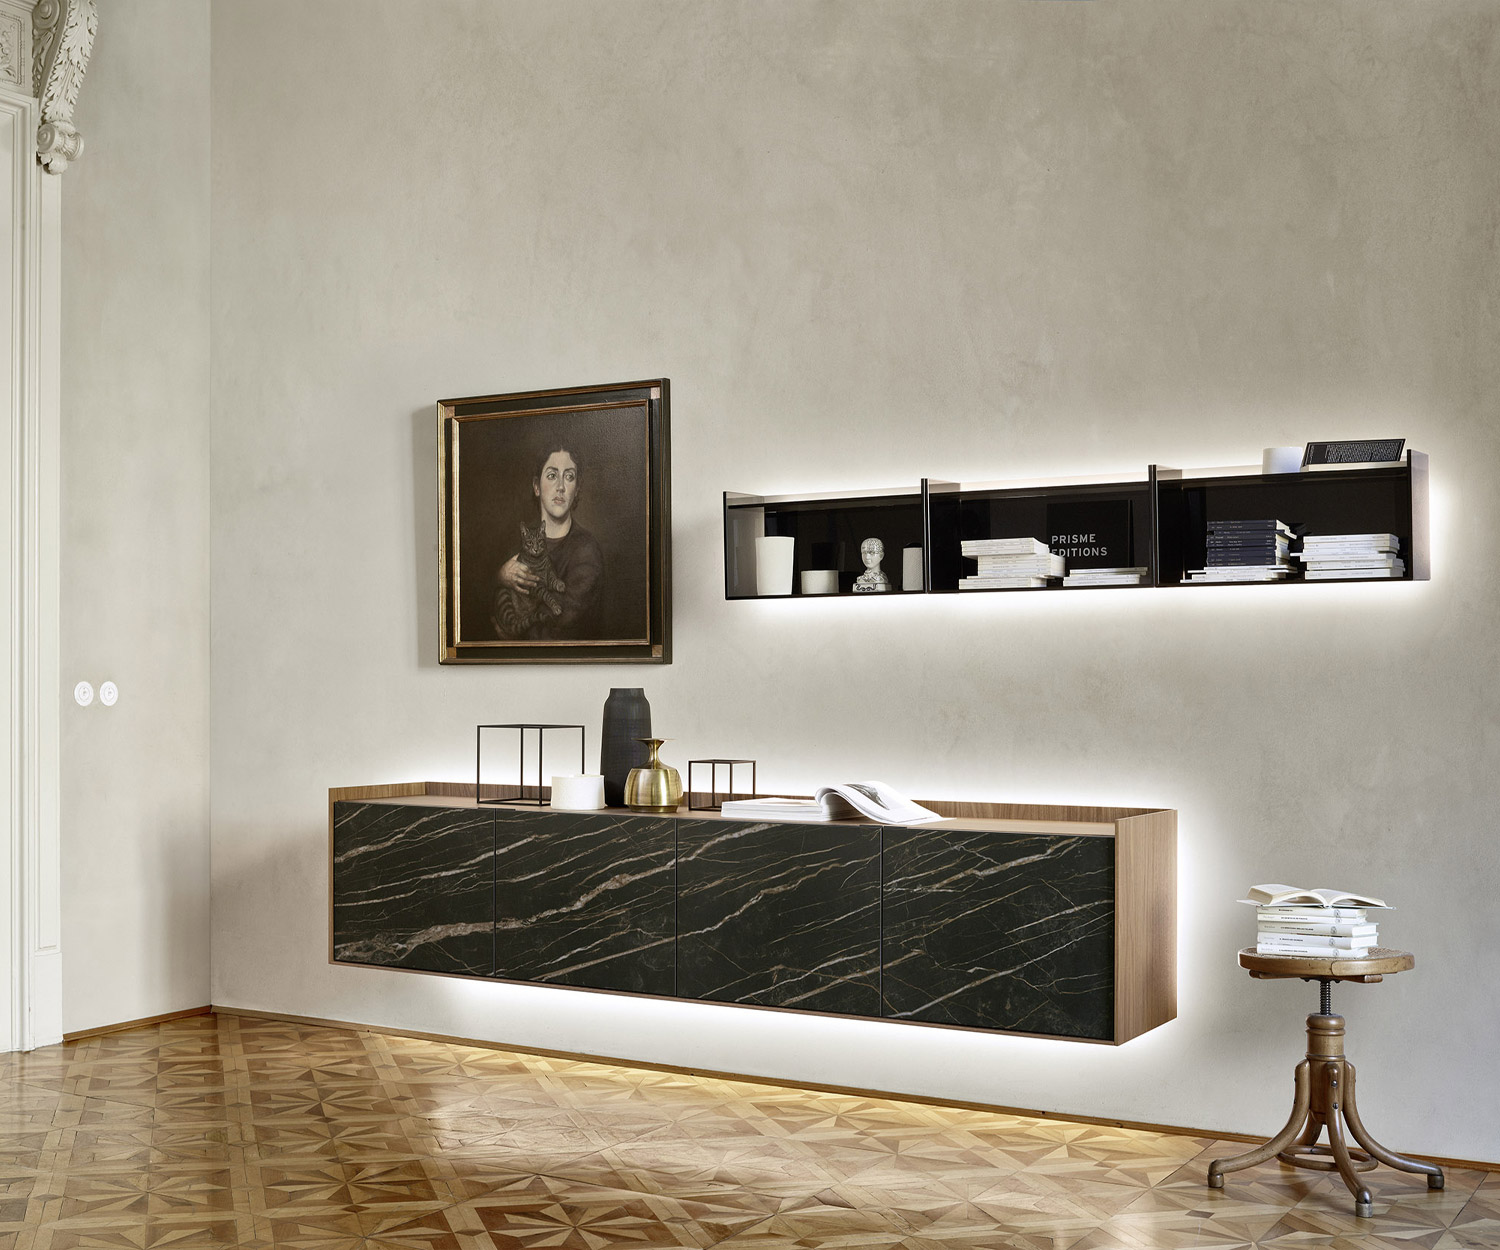 Exclusieve Livitalia design glazen wandplank in de woonkamer boven een hangend dressoir